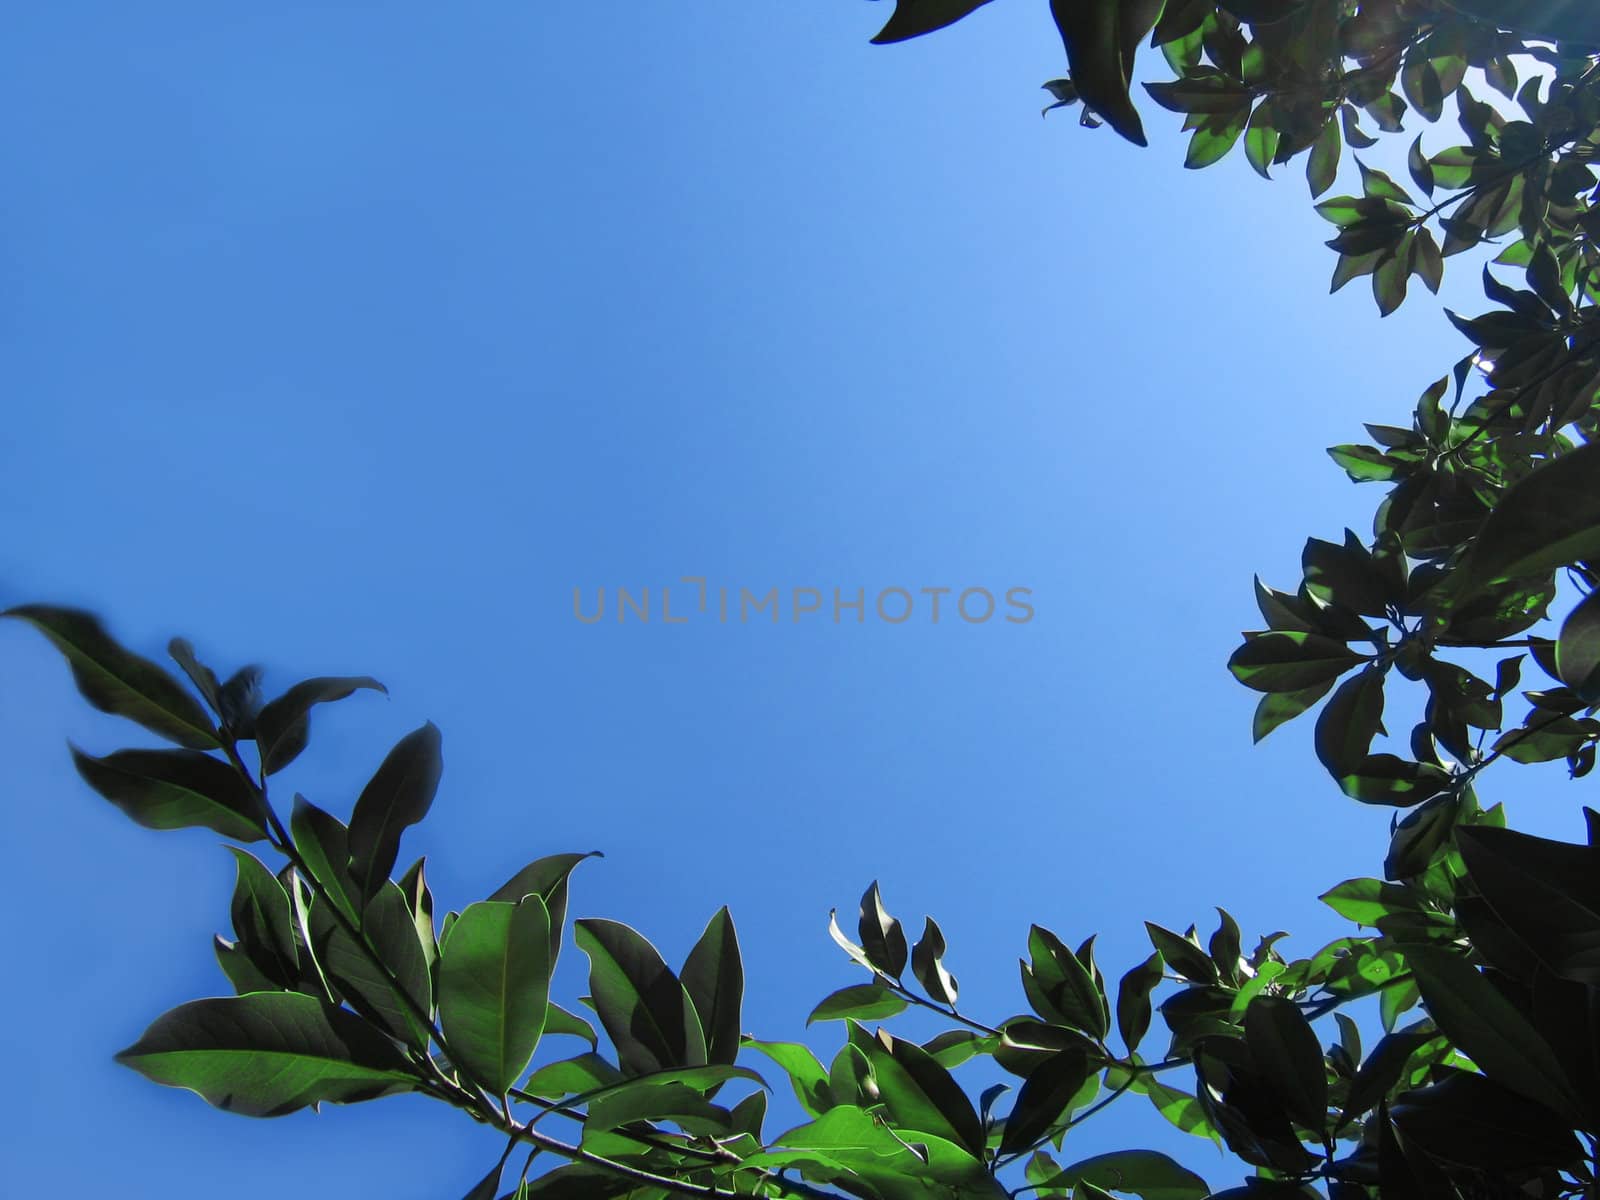 ficus foliage making frame on blue sky back